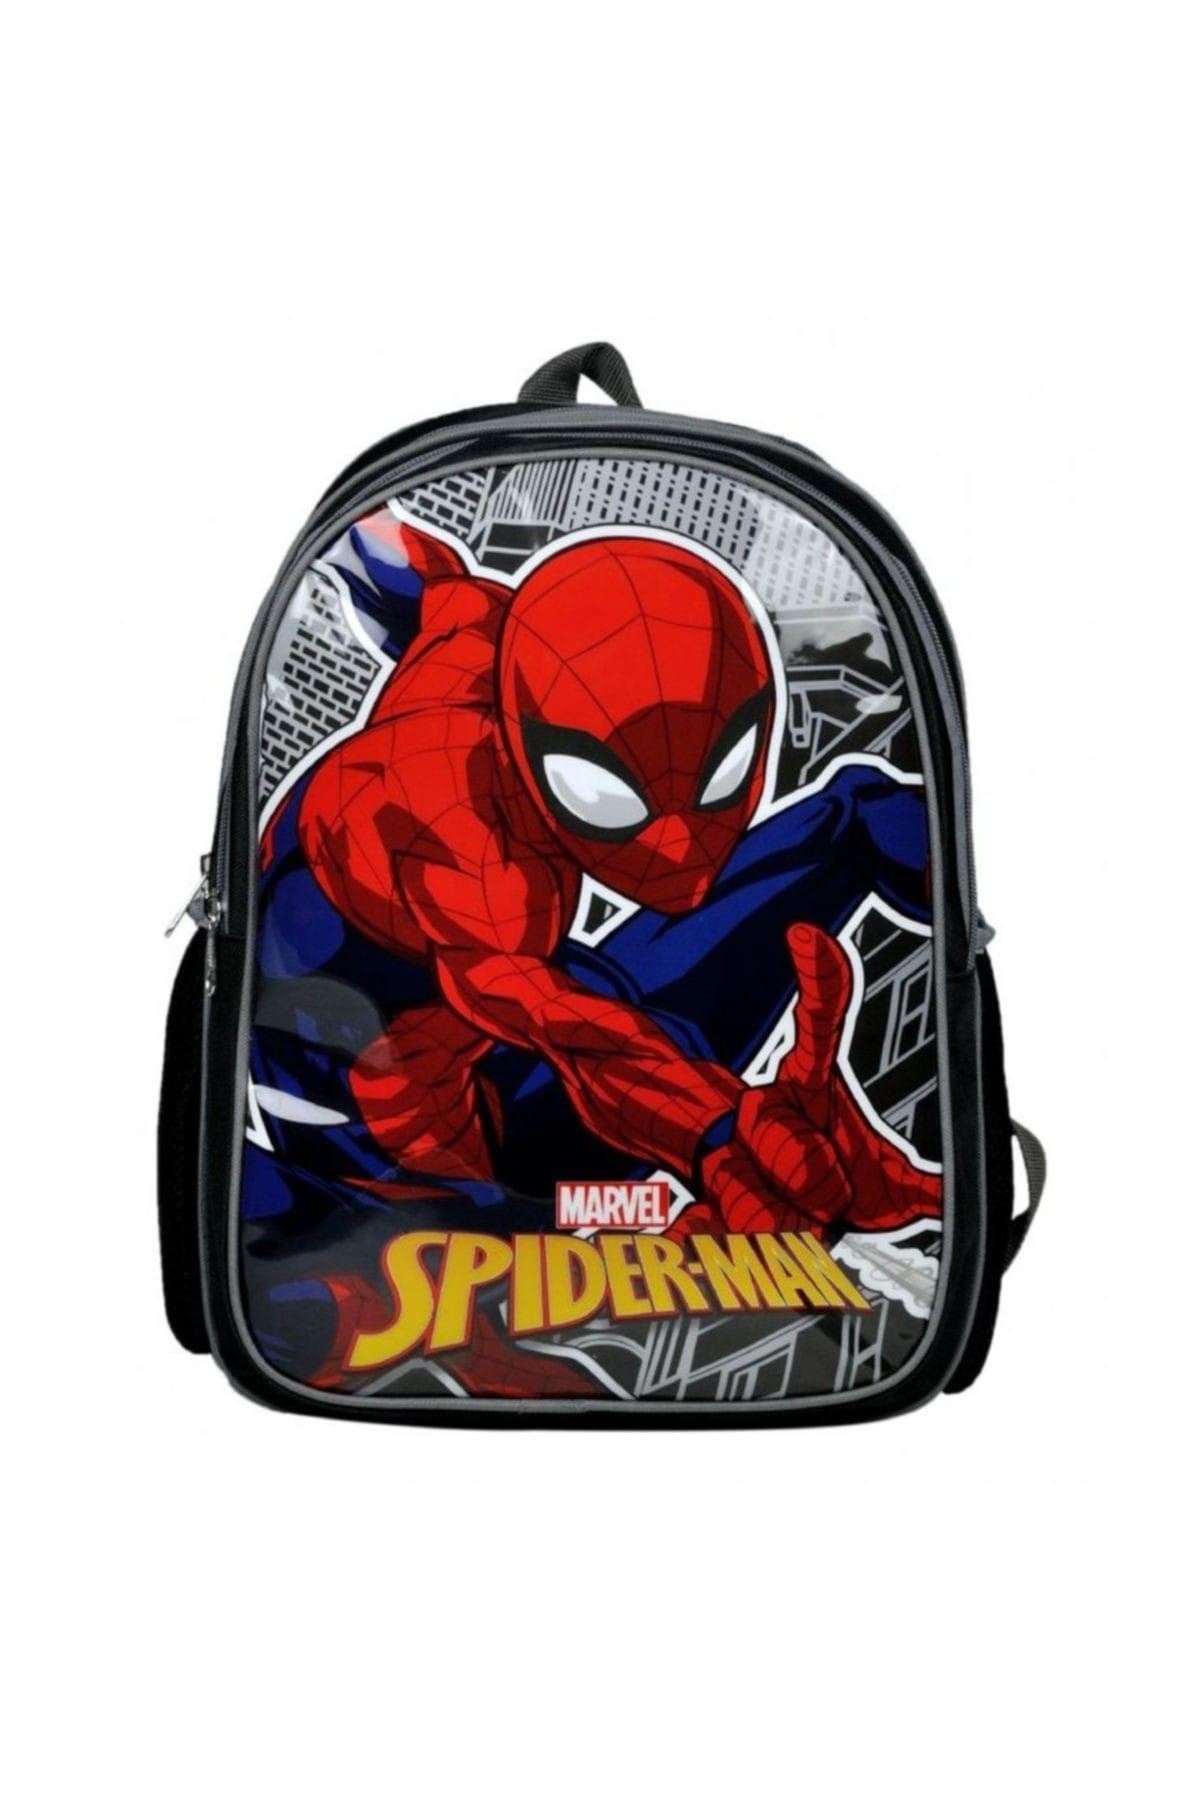 DİSNEY Spider-Man İki Bölmeli Siyah Okul/Sırt Çantası(Hakan 96616)